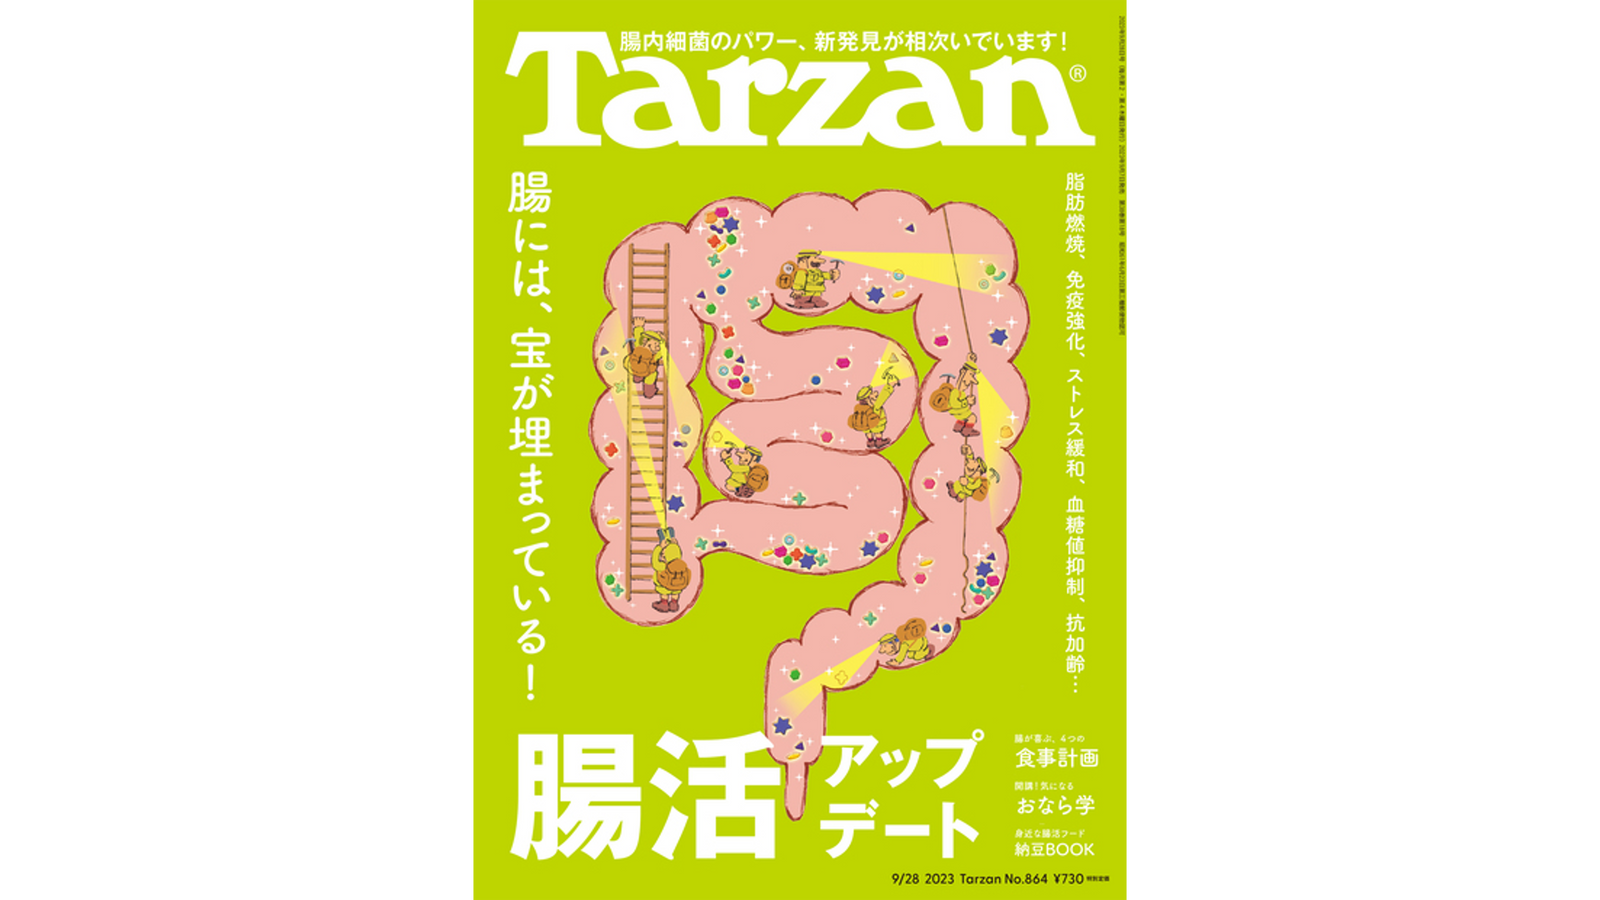 健康情報誌「Tarzan (ターザン)」に掲載されました